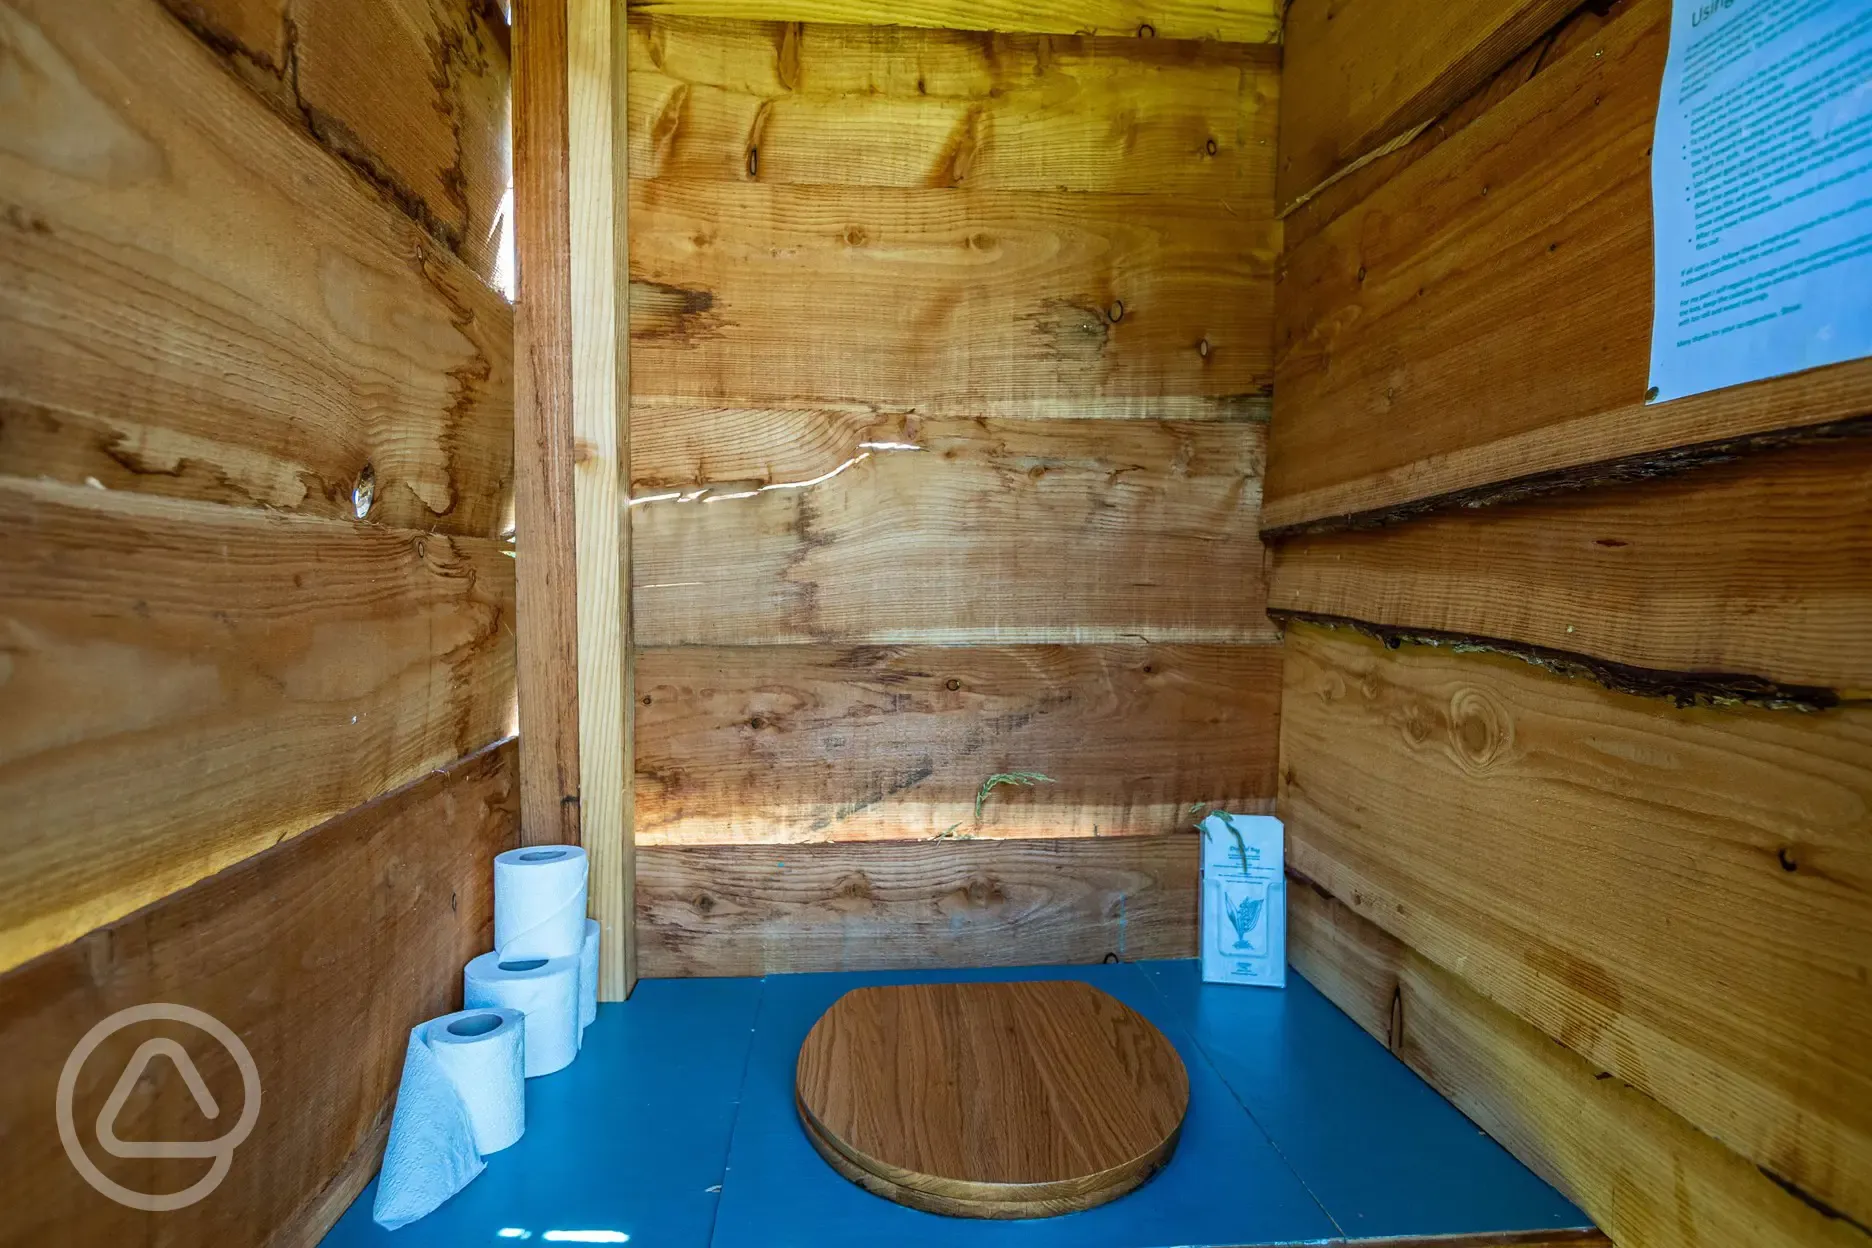 The Swaledale shepherd's hut toilet